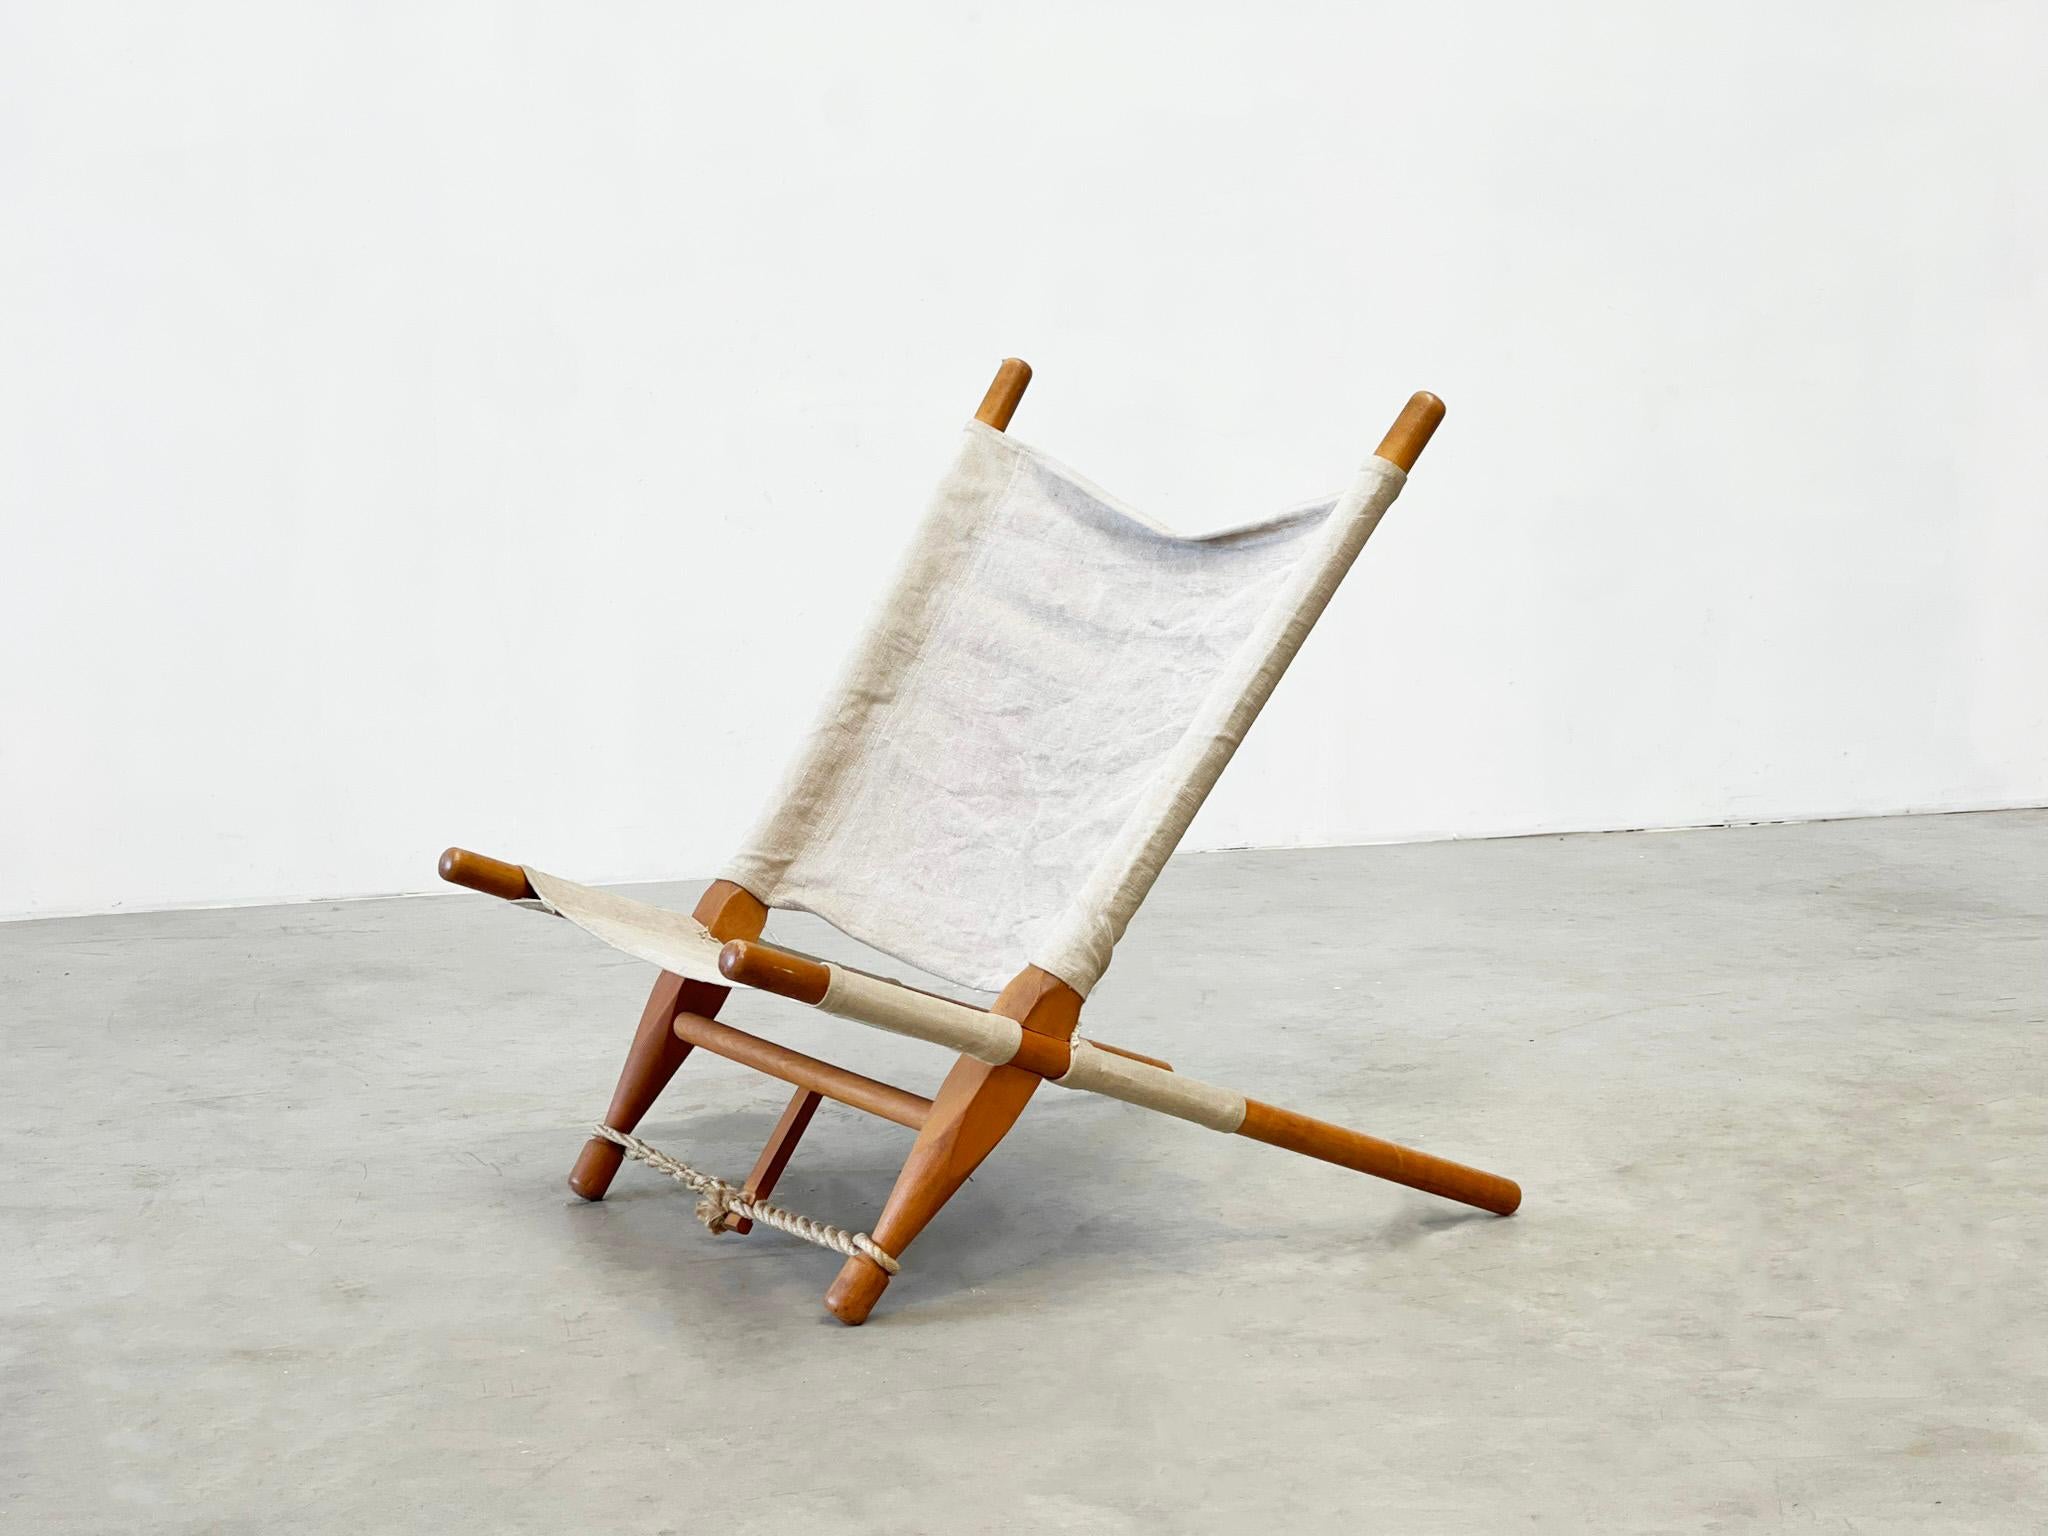 Sägestuhl von Ole Gjerløv-Knudsen, Dänemark 1958
Originell gestalteter Loungesessel von Ole Gjerløv-Knudsen. Dieser Stuhl ist auf Leichtigkeit, Einfachheit und Liebe zum Detail ausgelegt. Der Stuhl wird ohne Schrauben zusammengehalten. Rein nach dem